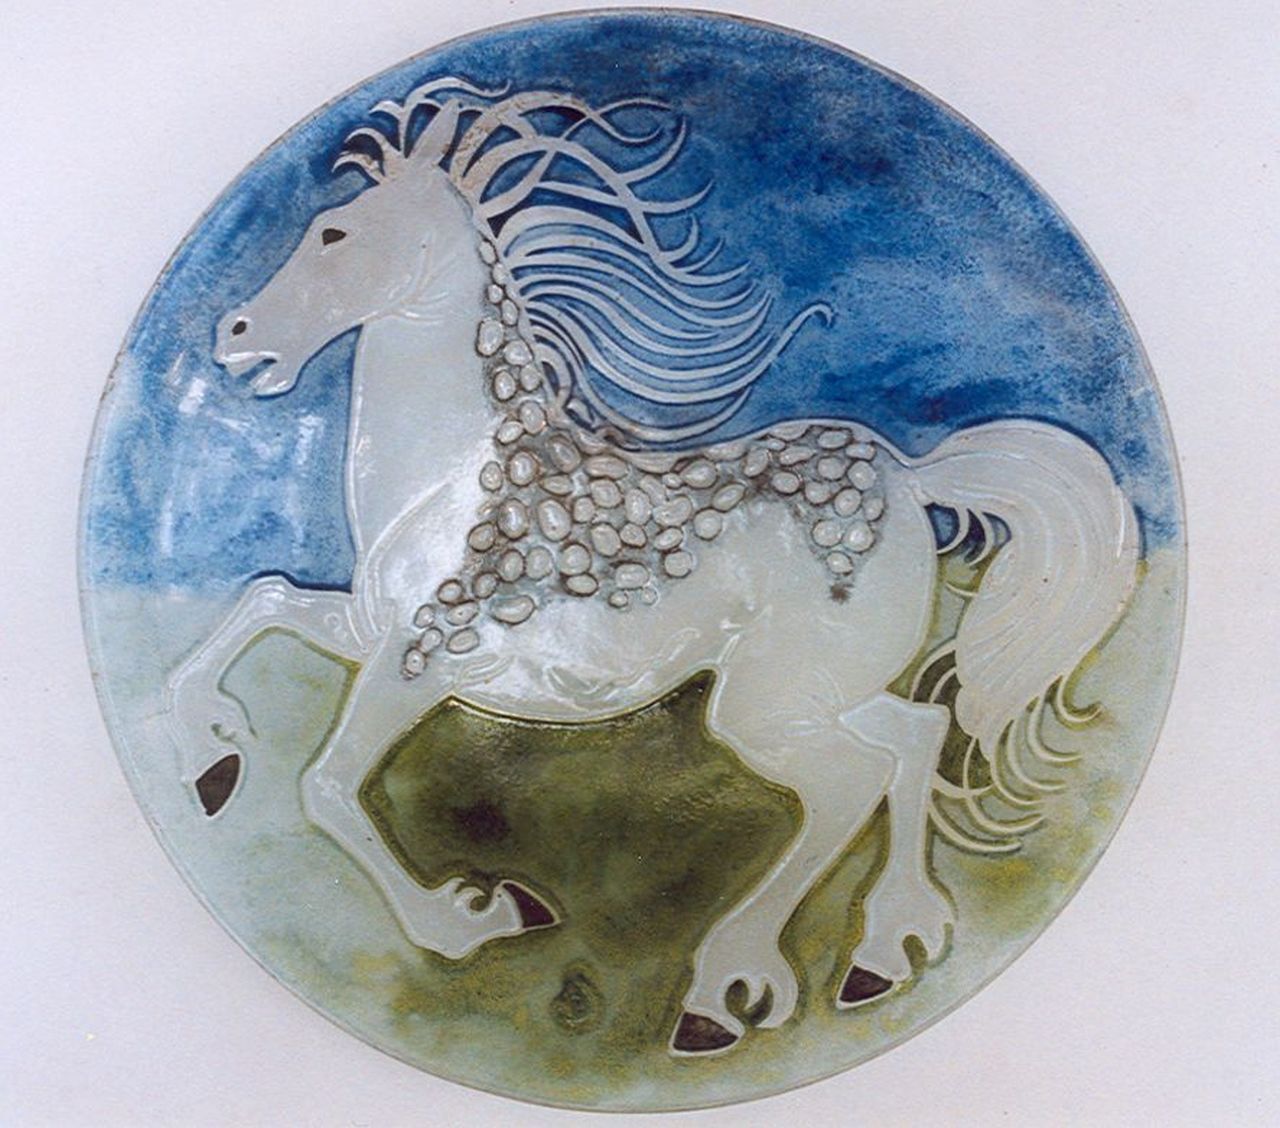 Starreveld P.  | Pieter Starreveld, Glazen schaal met paard, glas  38,9 cm, gesigneerd middenonder met monogram